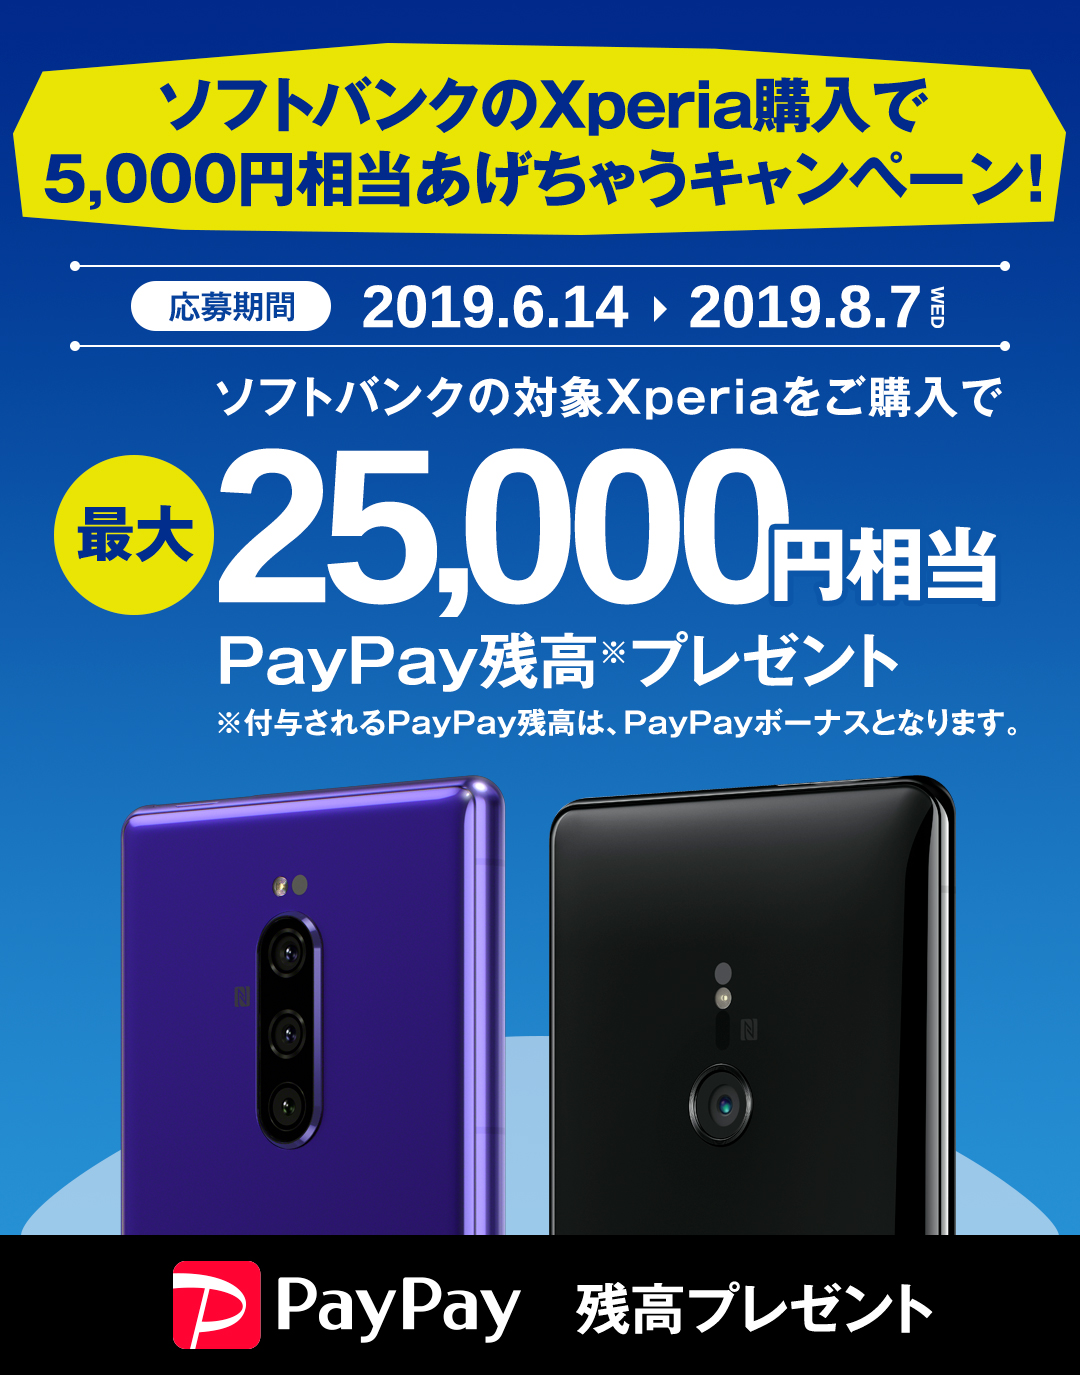 ソフトバンクのXperia購入で5,000円相当あげちゃうキャンペーン/ソフトバンクの対象Xperiaを購入で最大25,000円相当PayPay残高※プレゼント/応募受付期間 2019.6.14～2019.8.7WED/※付与されるPayPay残高は、PayPayボーナスとなります。